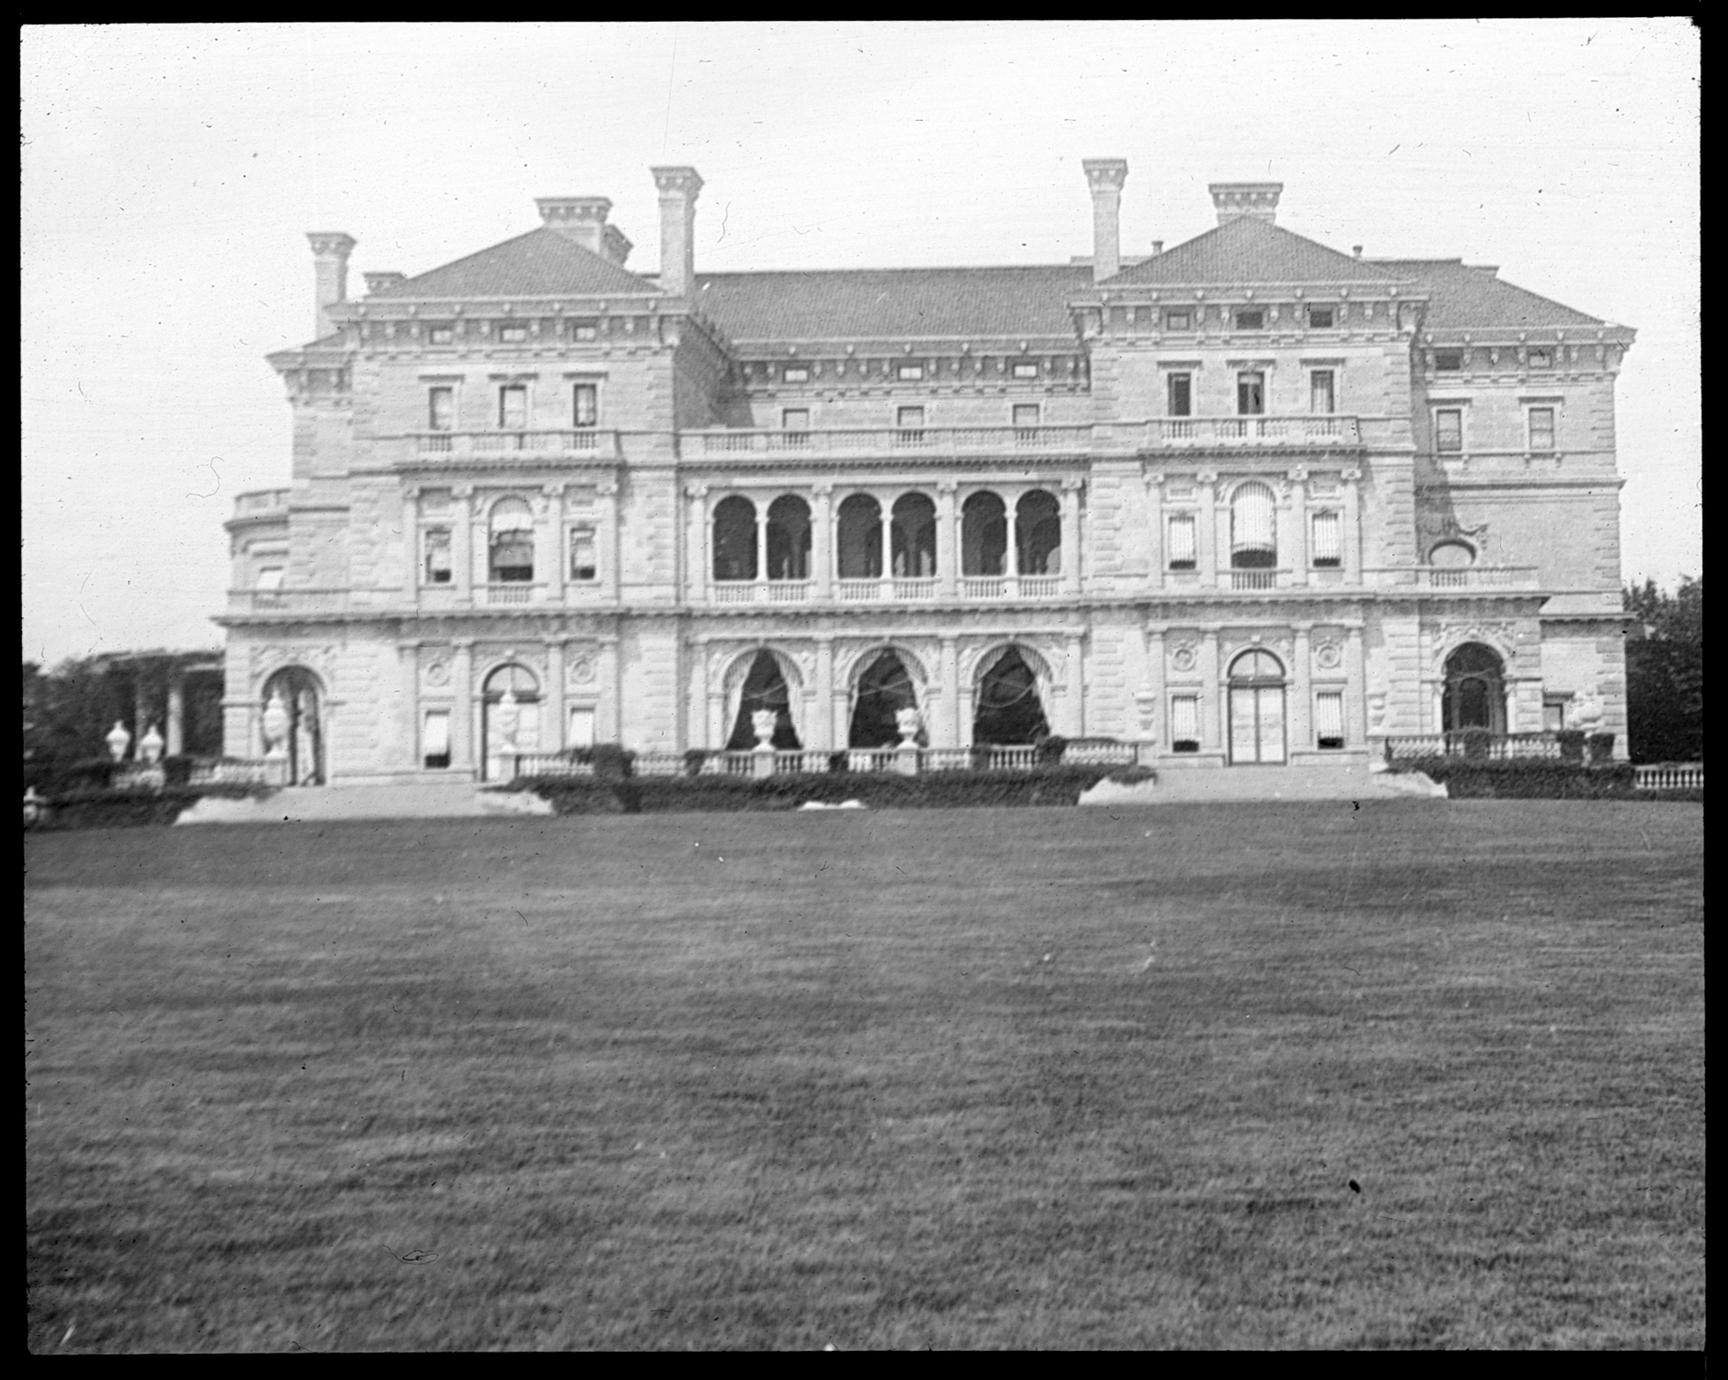 The "Breakers" Home Of Mrs. Vanderbilt - UWDC - UW-Madison Libraries